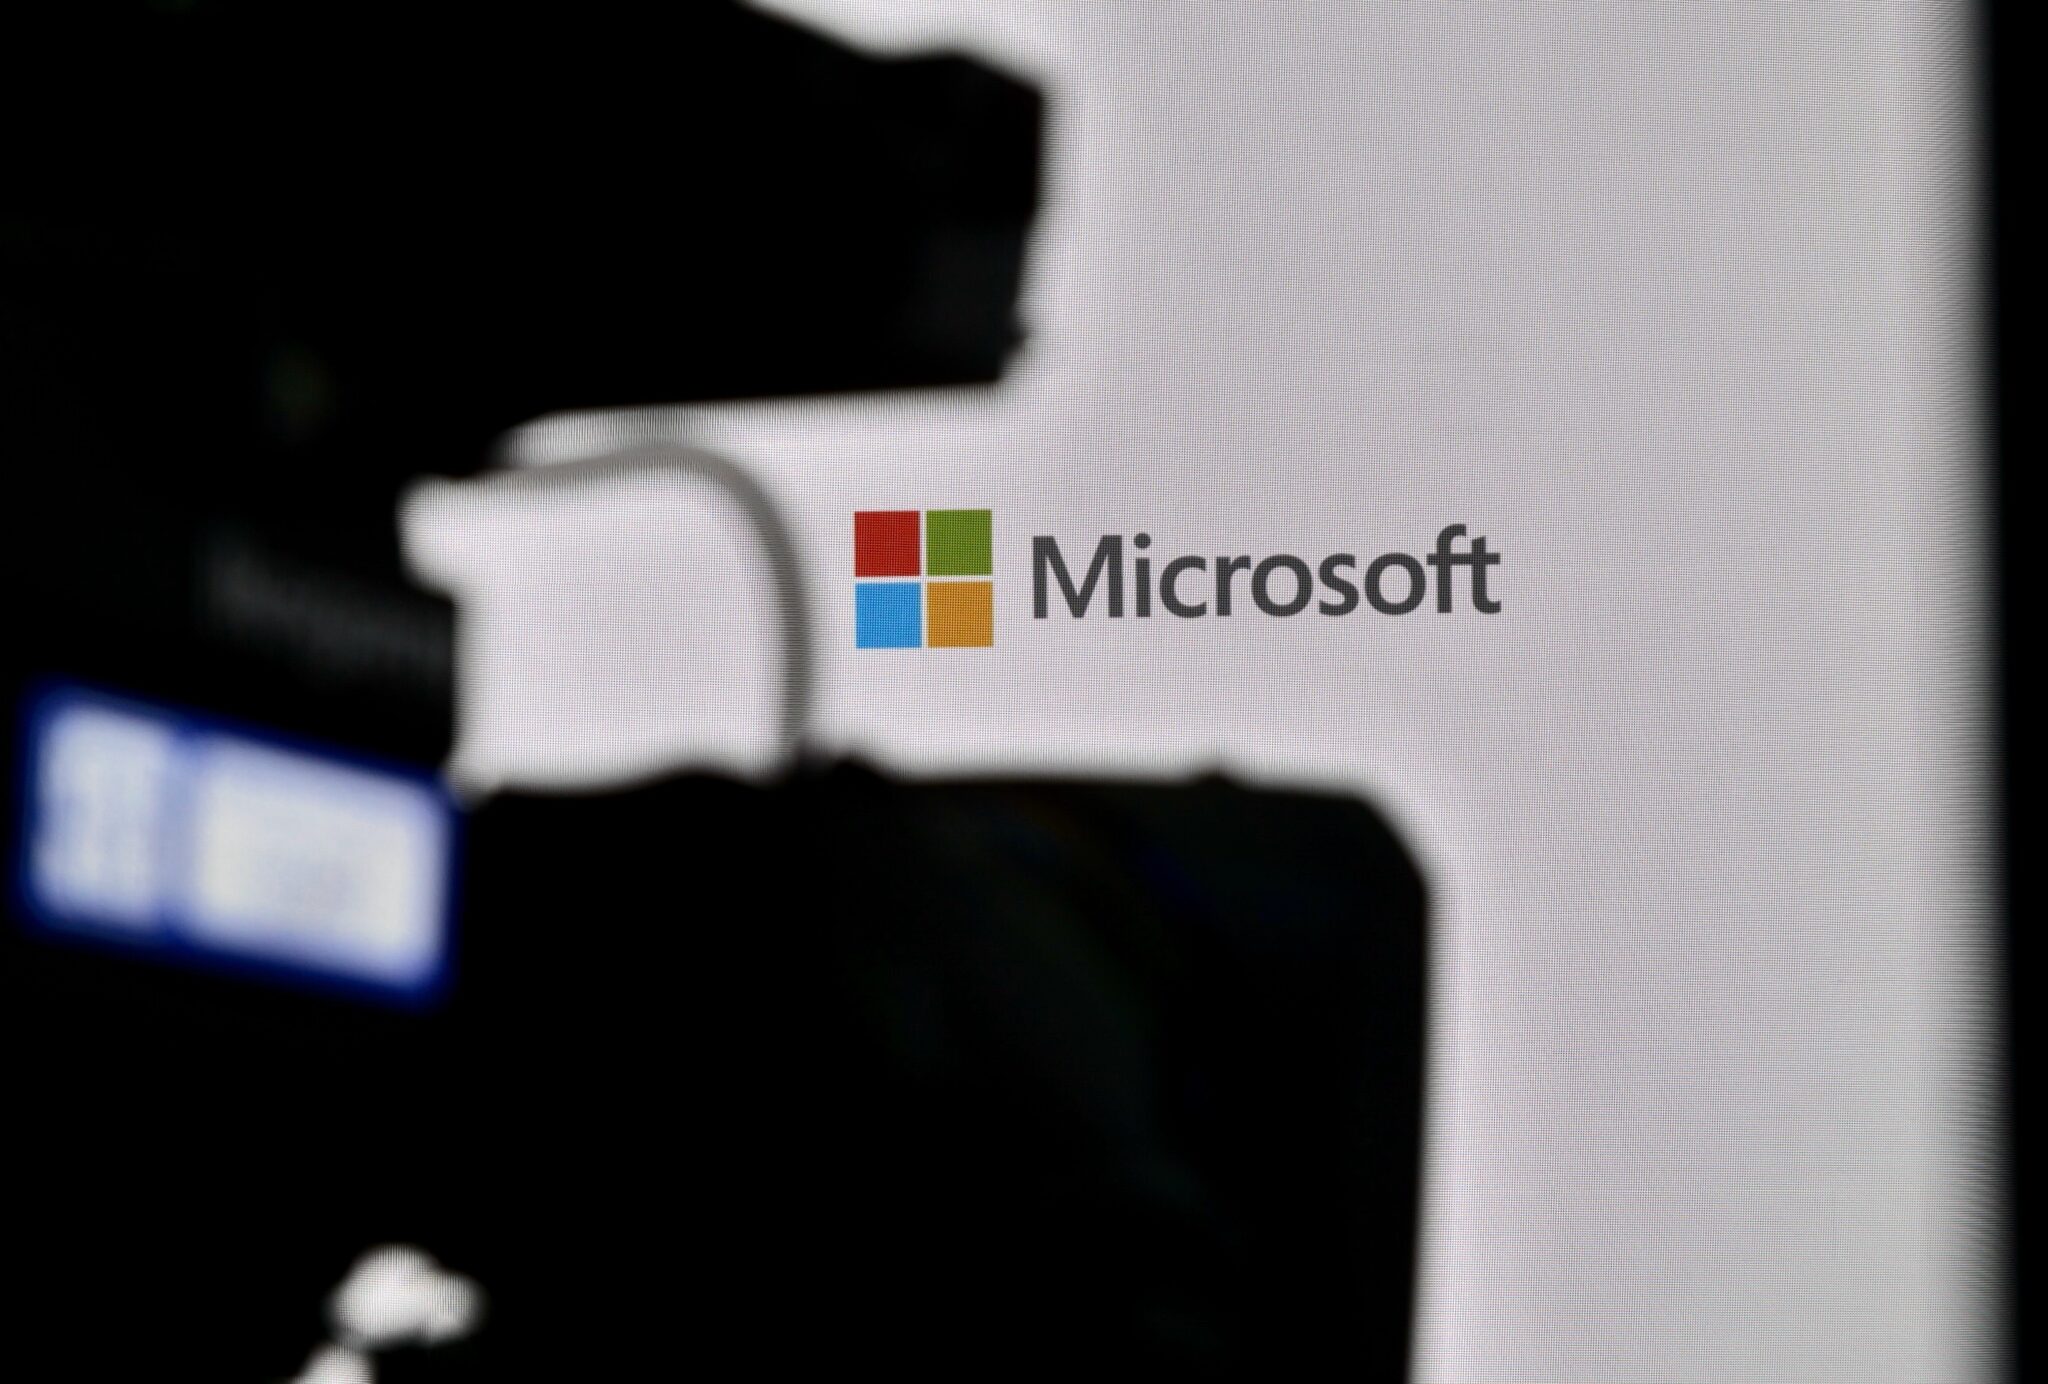 Microsoft forsøkte å skjule sårbarheten i DALL-E, sier en ansatt i selskapet.